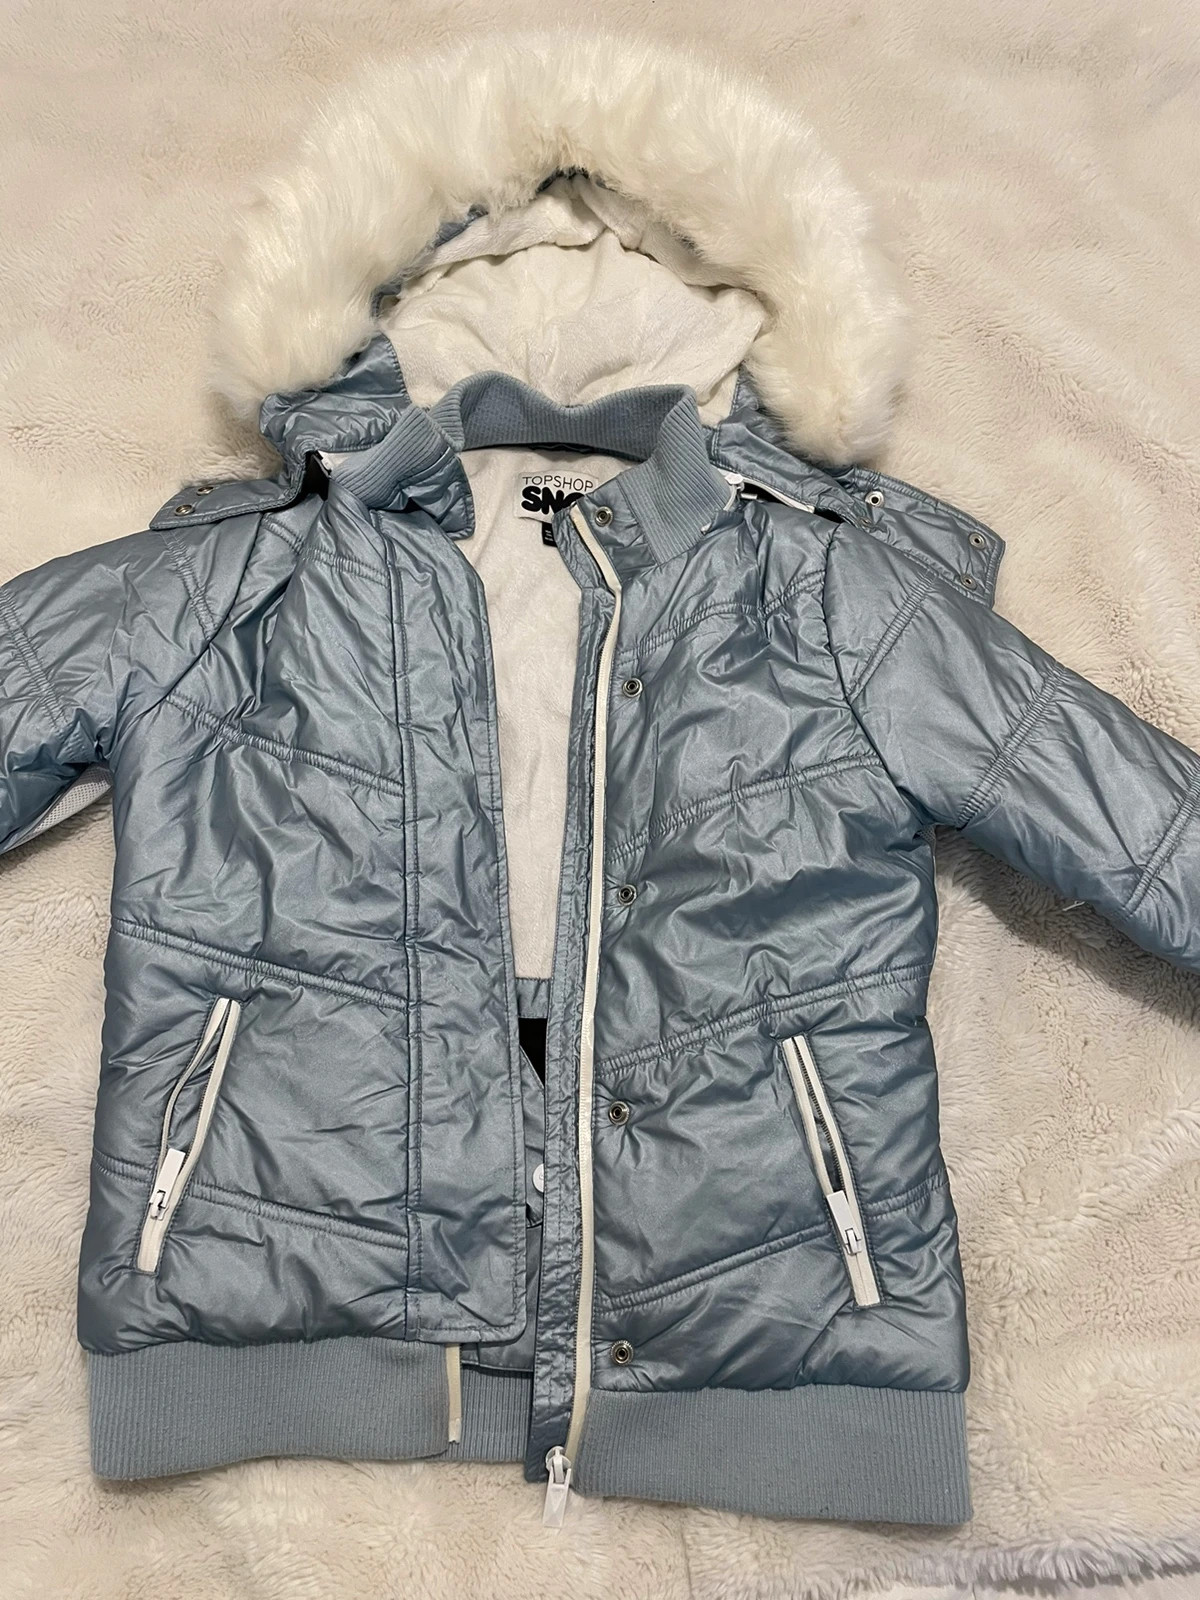 Topshop SNO Foil Camo Ski Jacket White/Silver UK 14 RRP £95 LN102